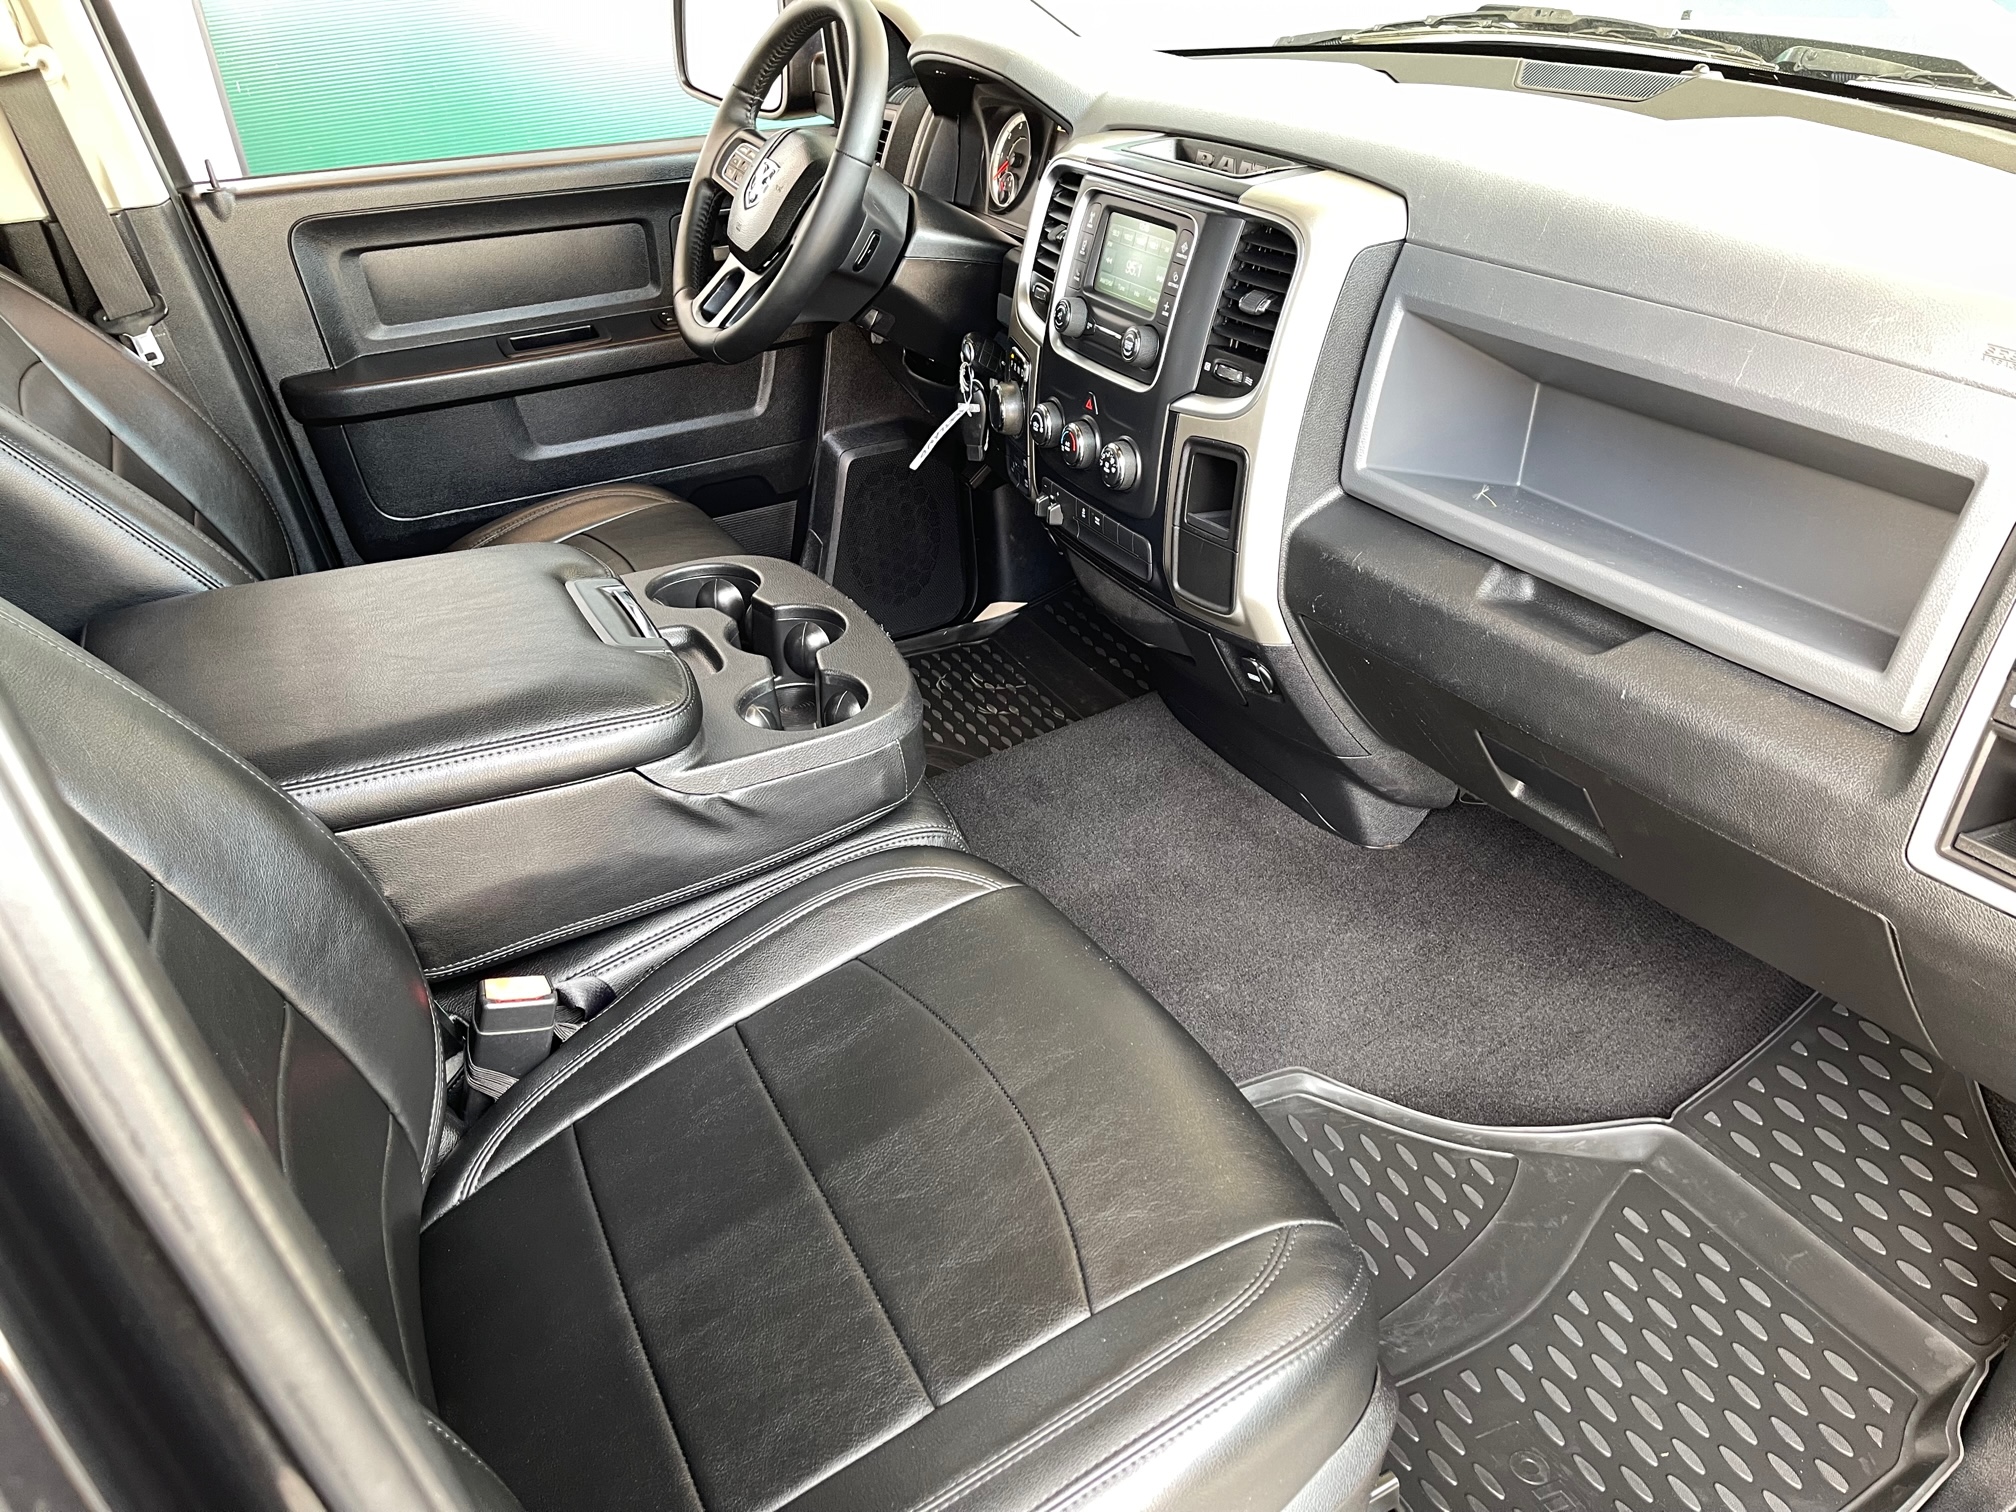 2018 Dodge Ram 1500 Classic zu verkaufen Osterreich